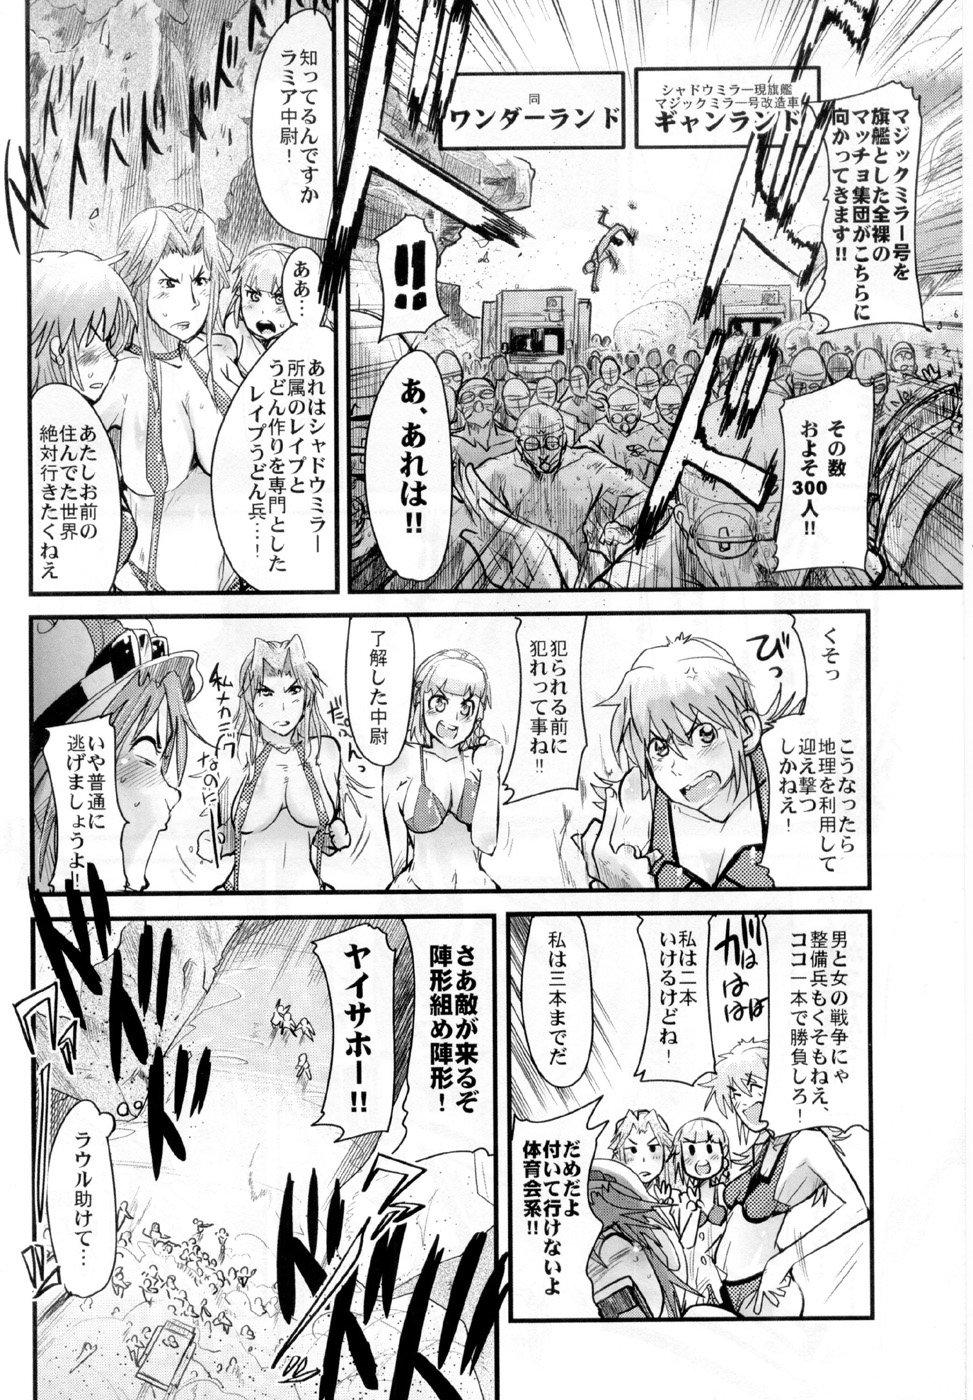 Plumper Boku no Watashi no Super Bobobbo Taisen OGS2 no S wa Yappari Sennou no S - Super robot wars Francais - Page 8